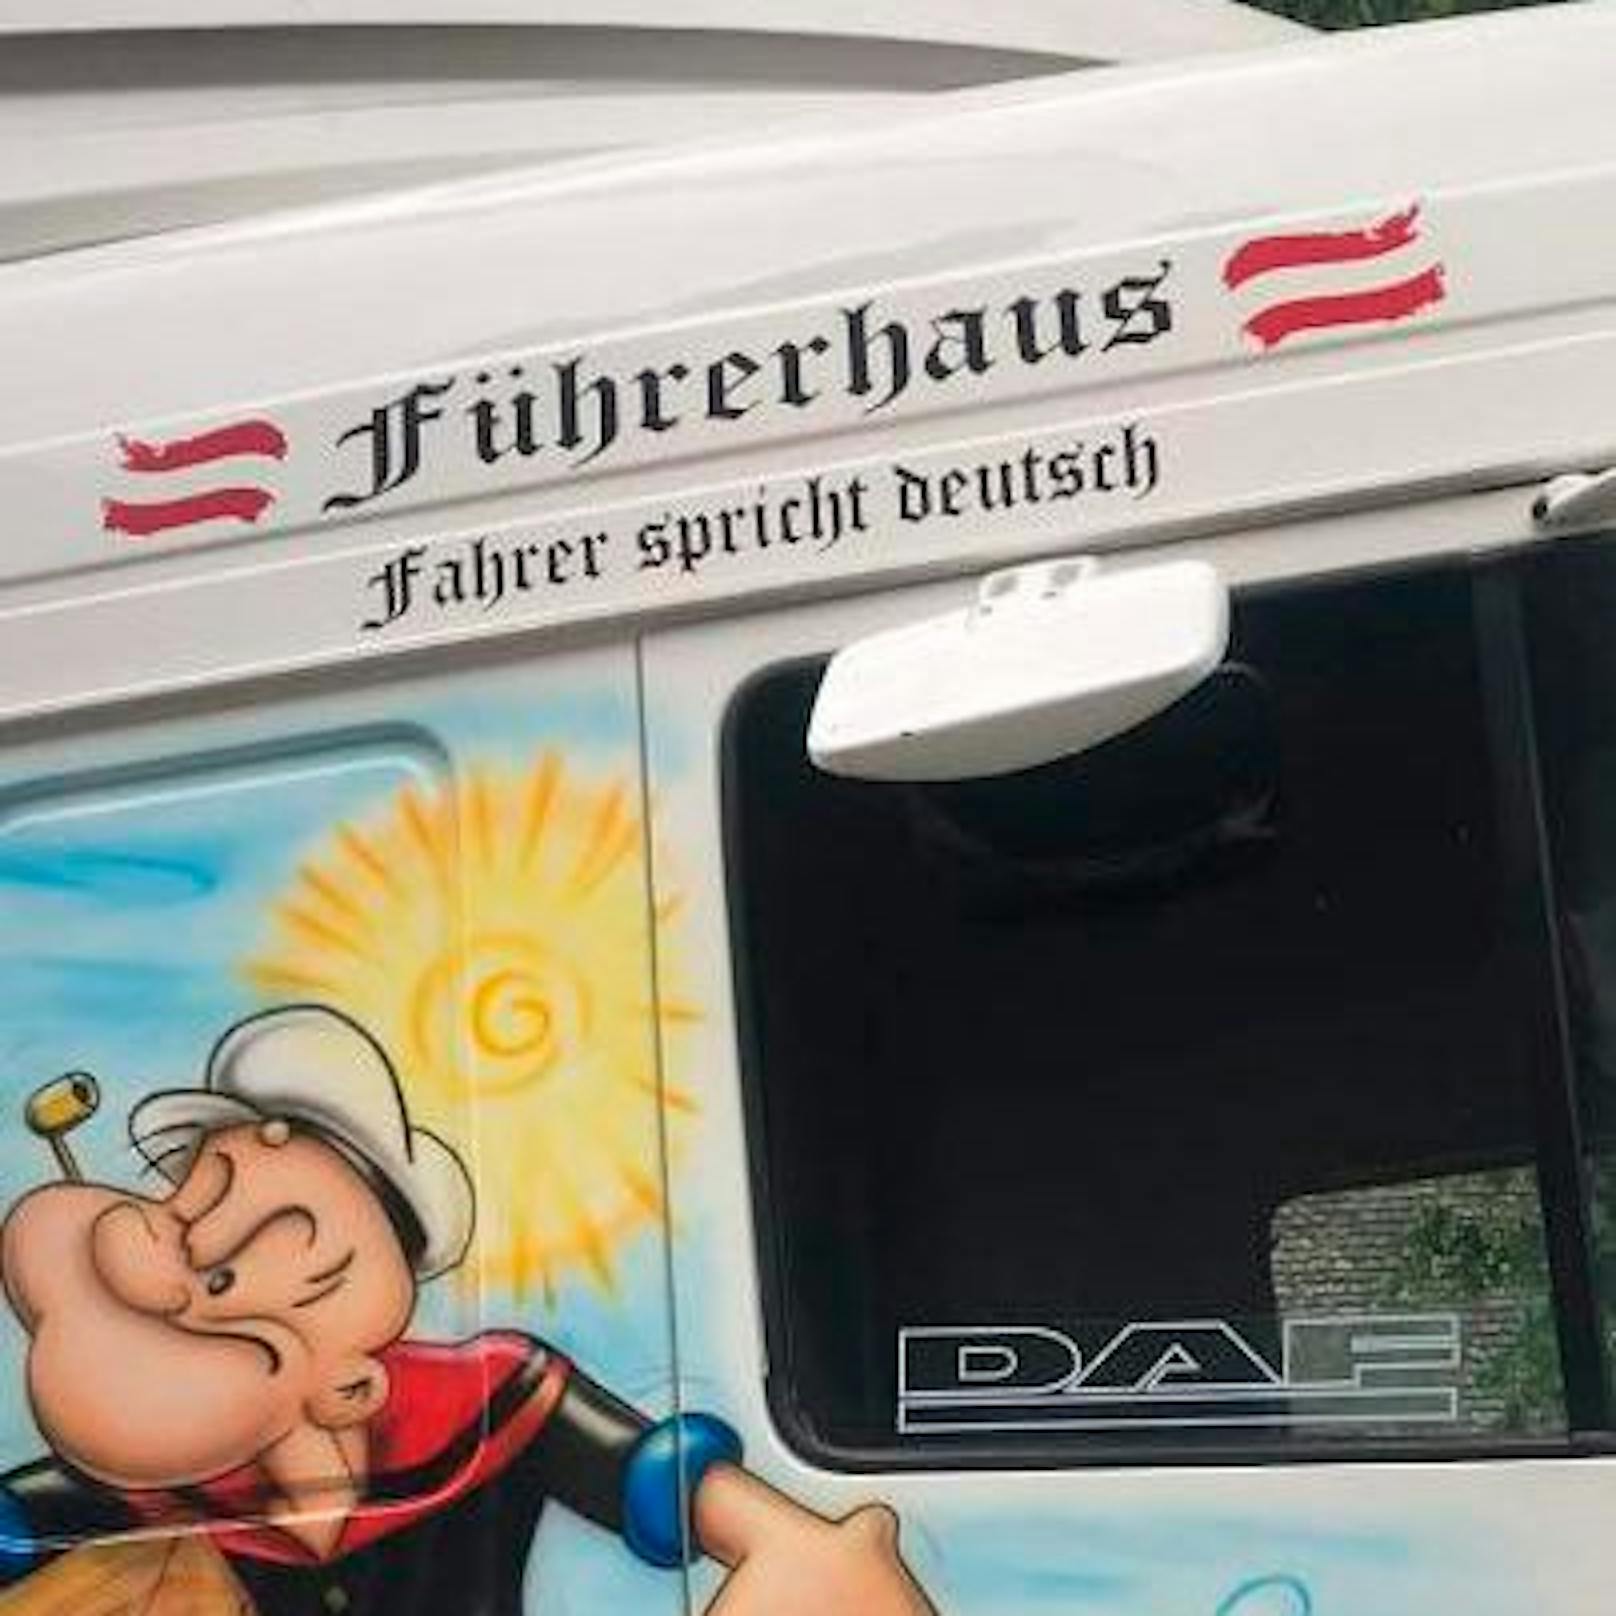 Die Aufschrift "Führerhaus" und "Fahrer spricht deutsch" sorgten im niederösterreichischen Waldviertel für Aufregung.